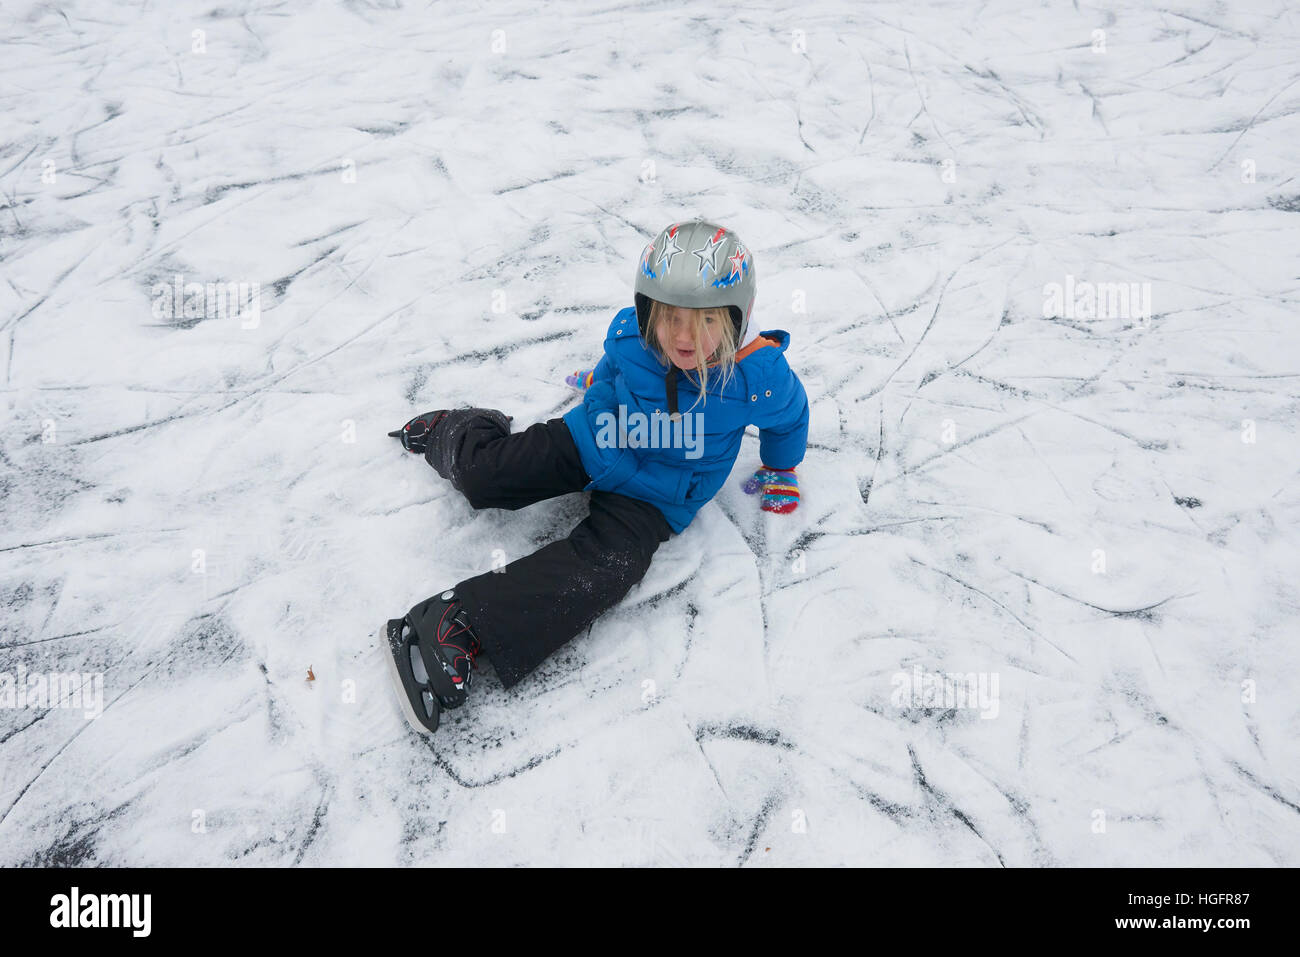 Adorable pequeño niño niña patinaje sobre hielo en invierno, la nieve día al aire libre en el parque el estanque congelado. Llevar un casco de seguridad Foto de stock